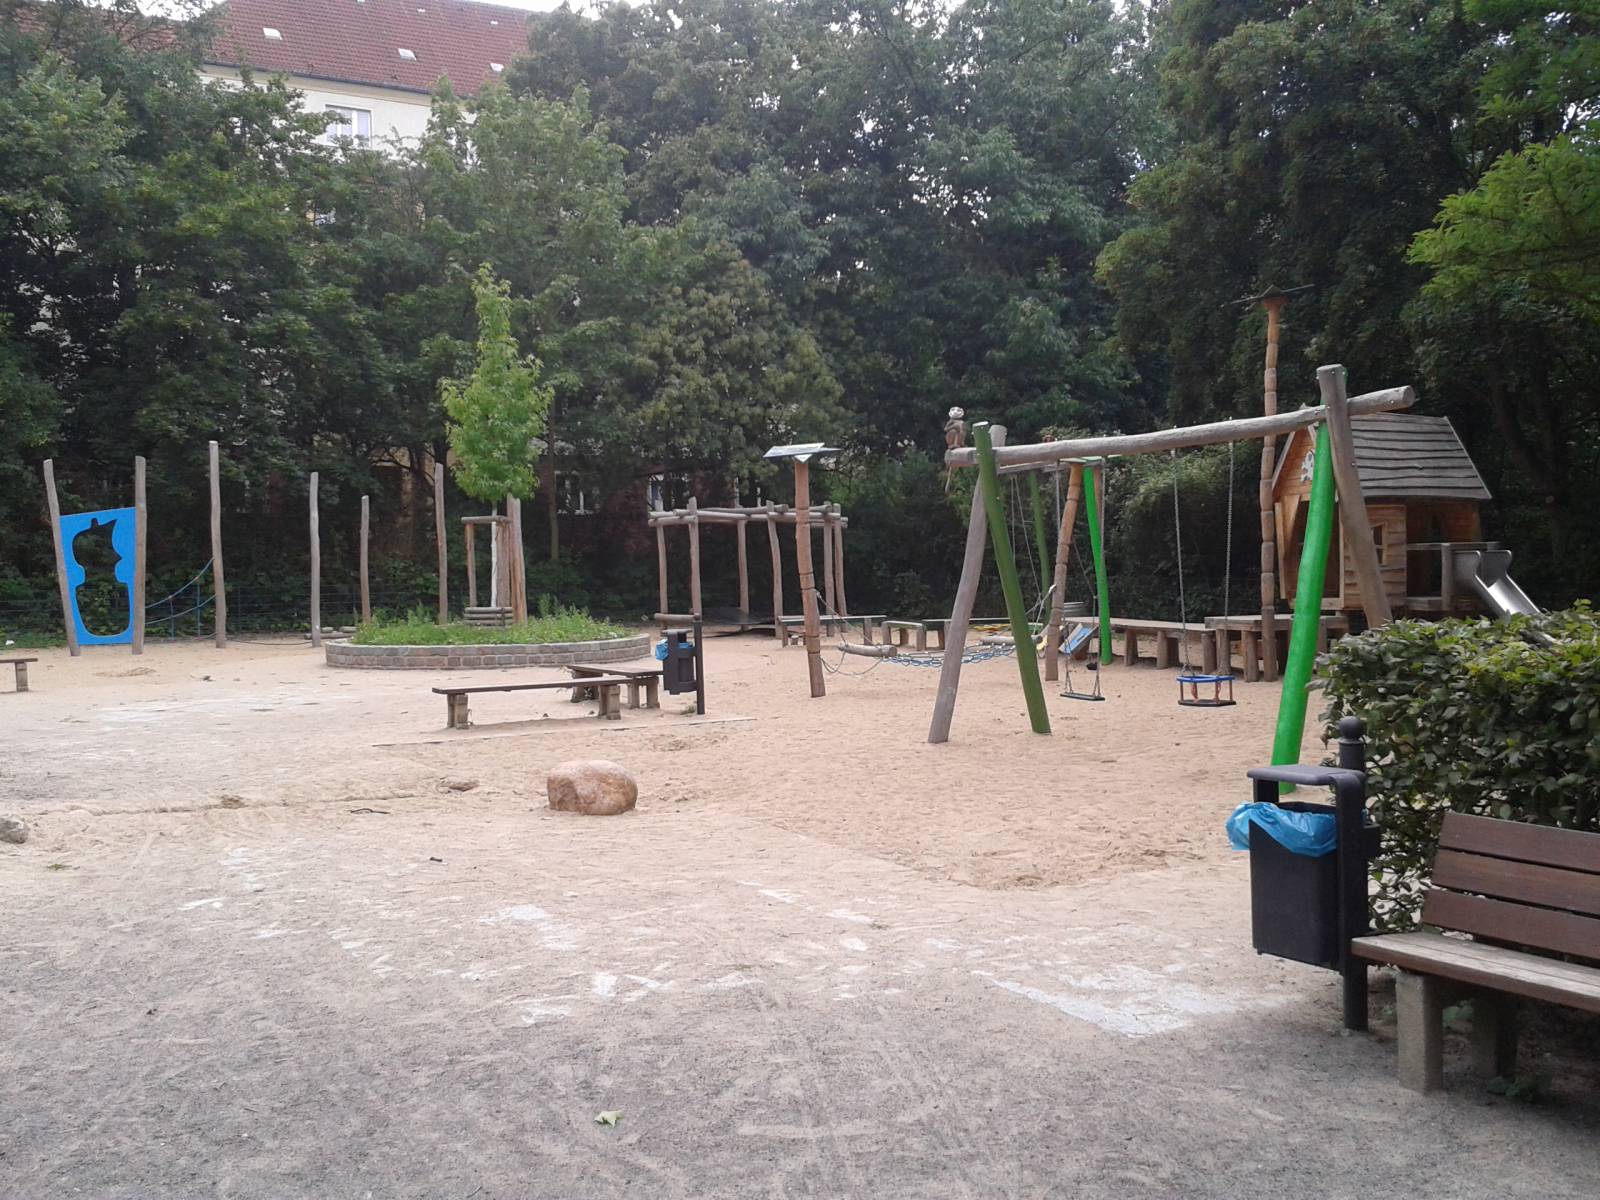 Spielplatz Birkbuschgarten in Berlin